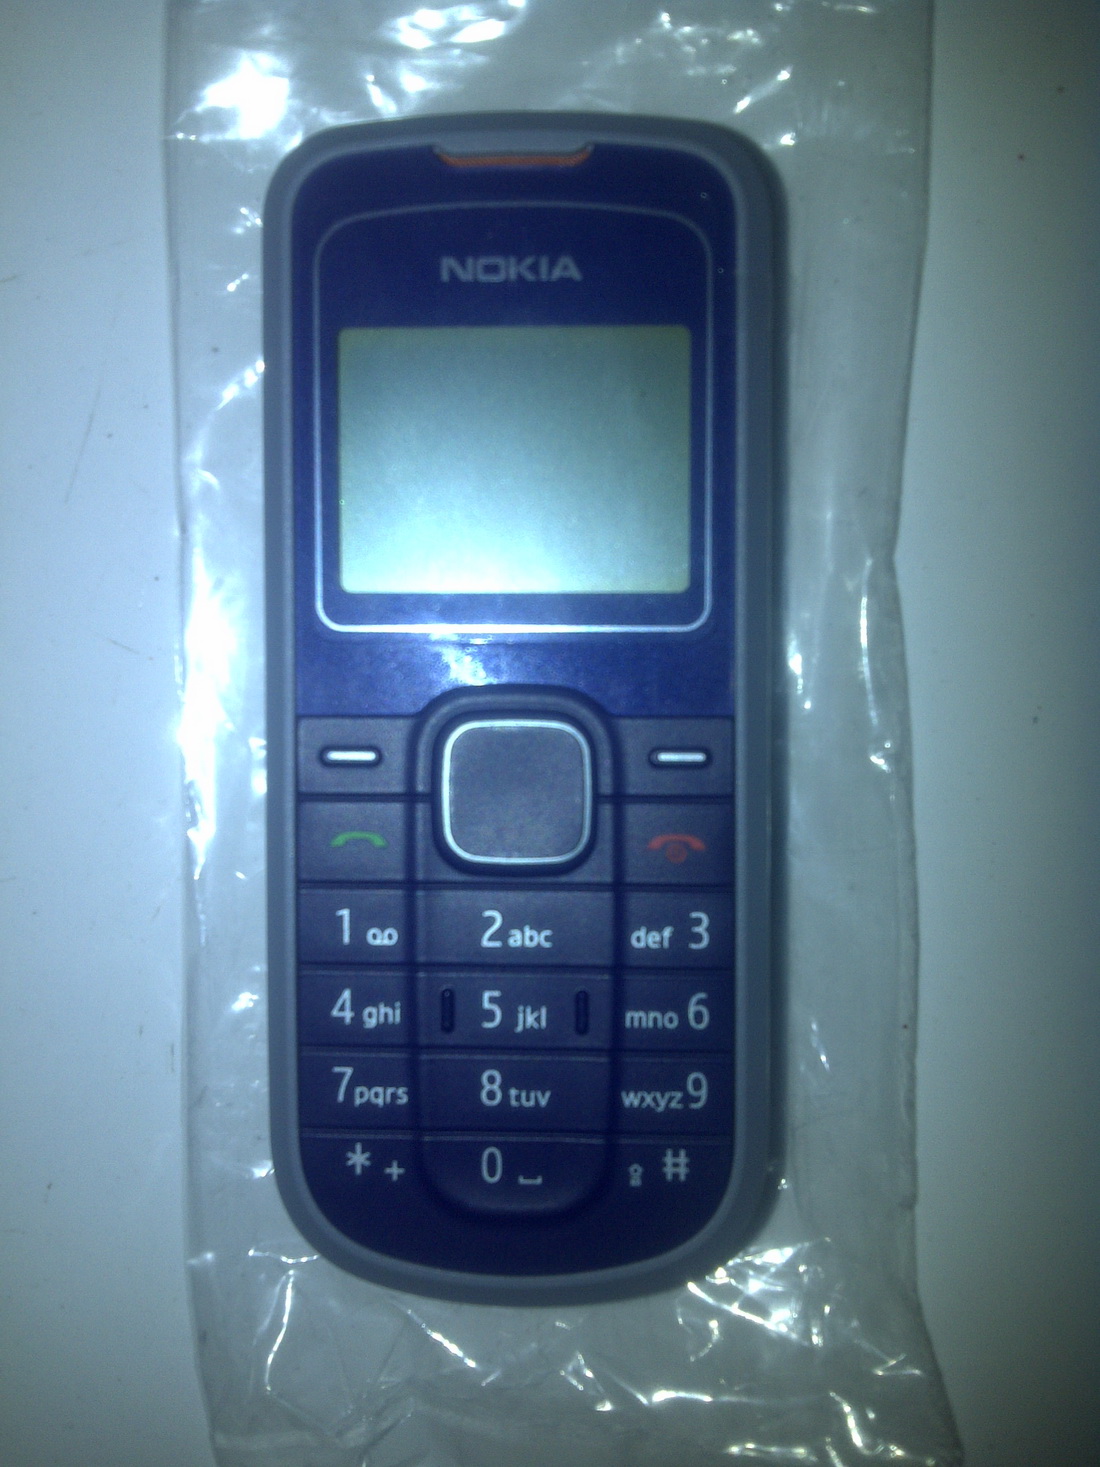 CNC phoneshop Daftar harga berbagai handphone Nokia jadul 